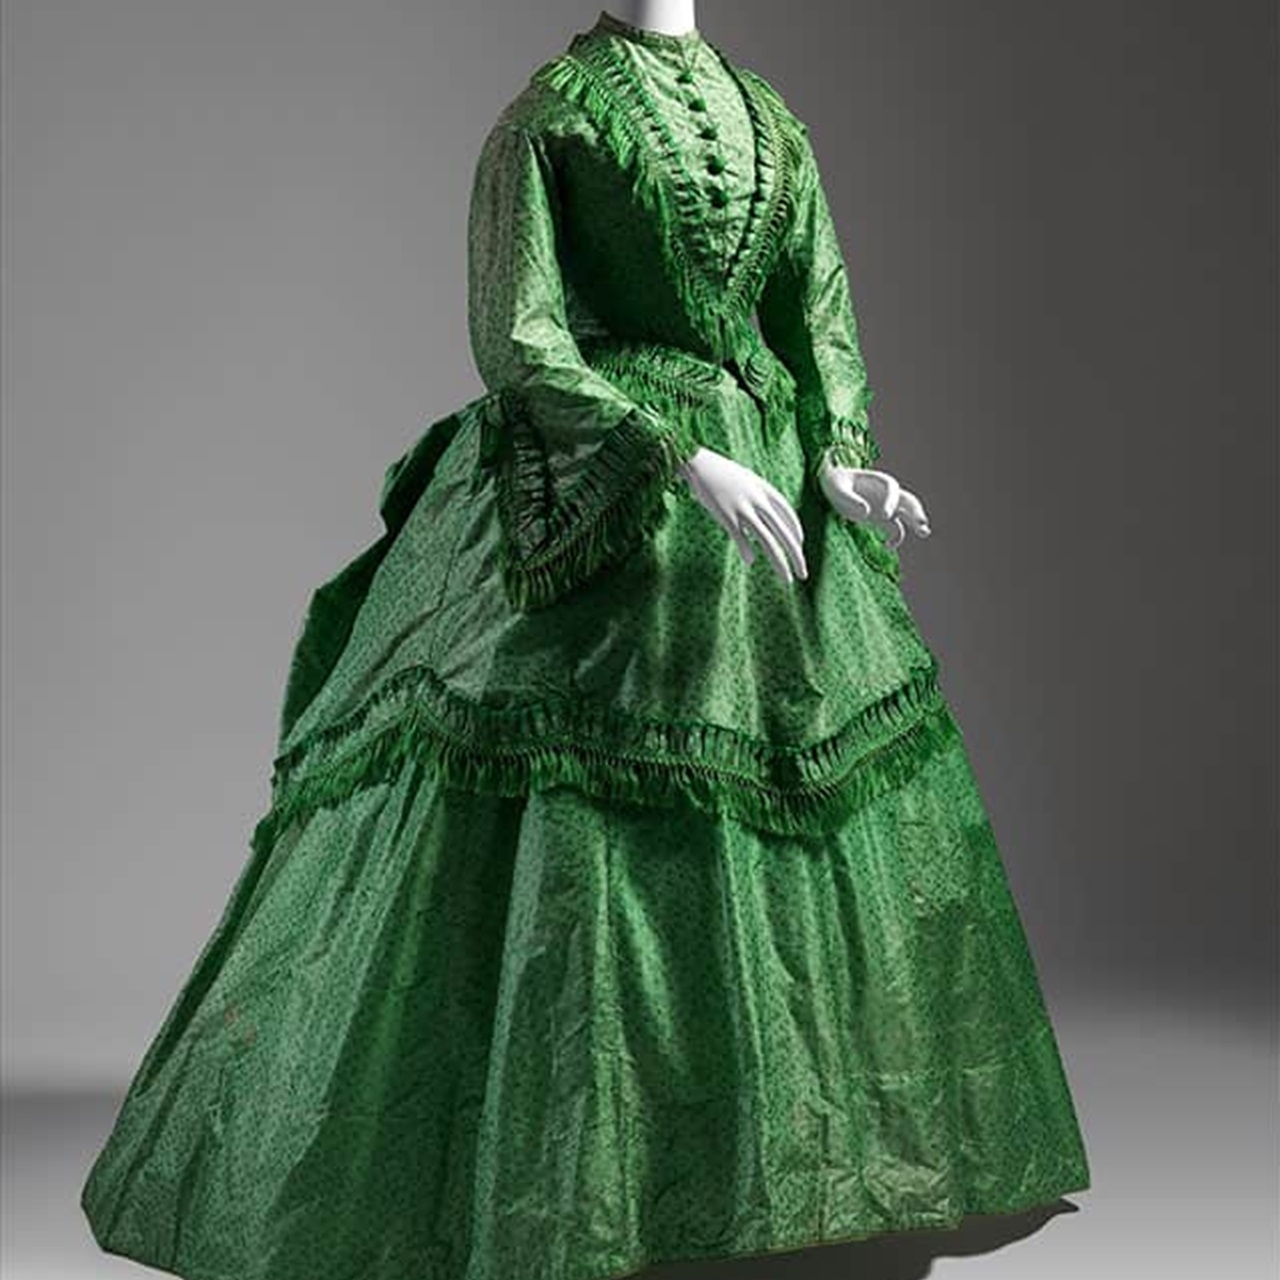 verde smeraldo, vestito vittoriano fatto con l'arsenico 